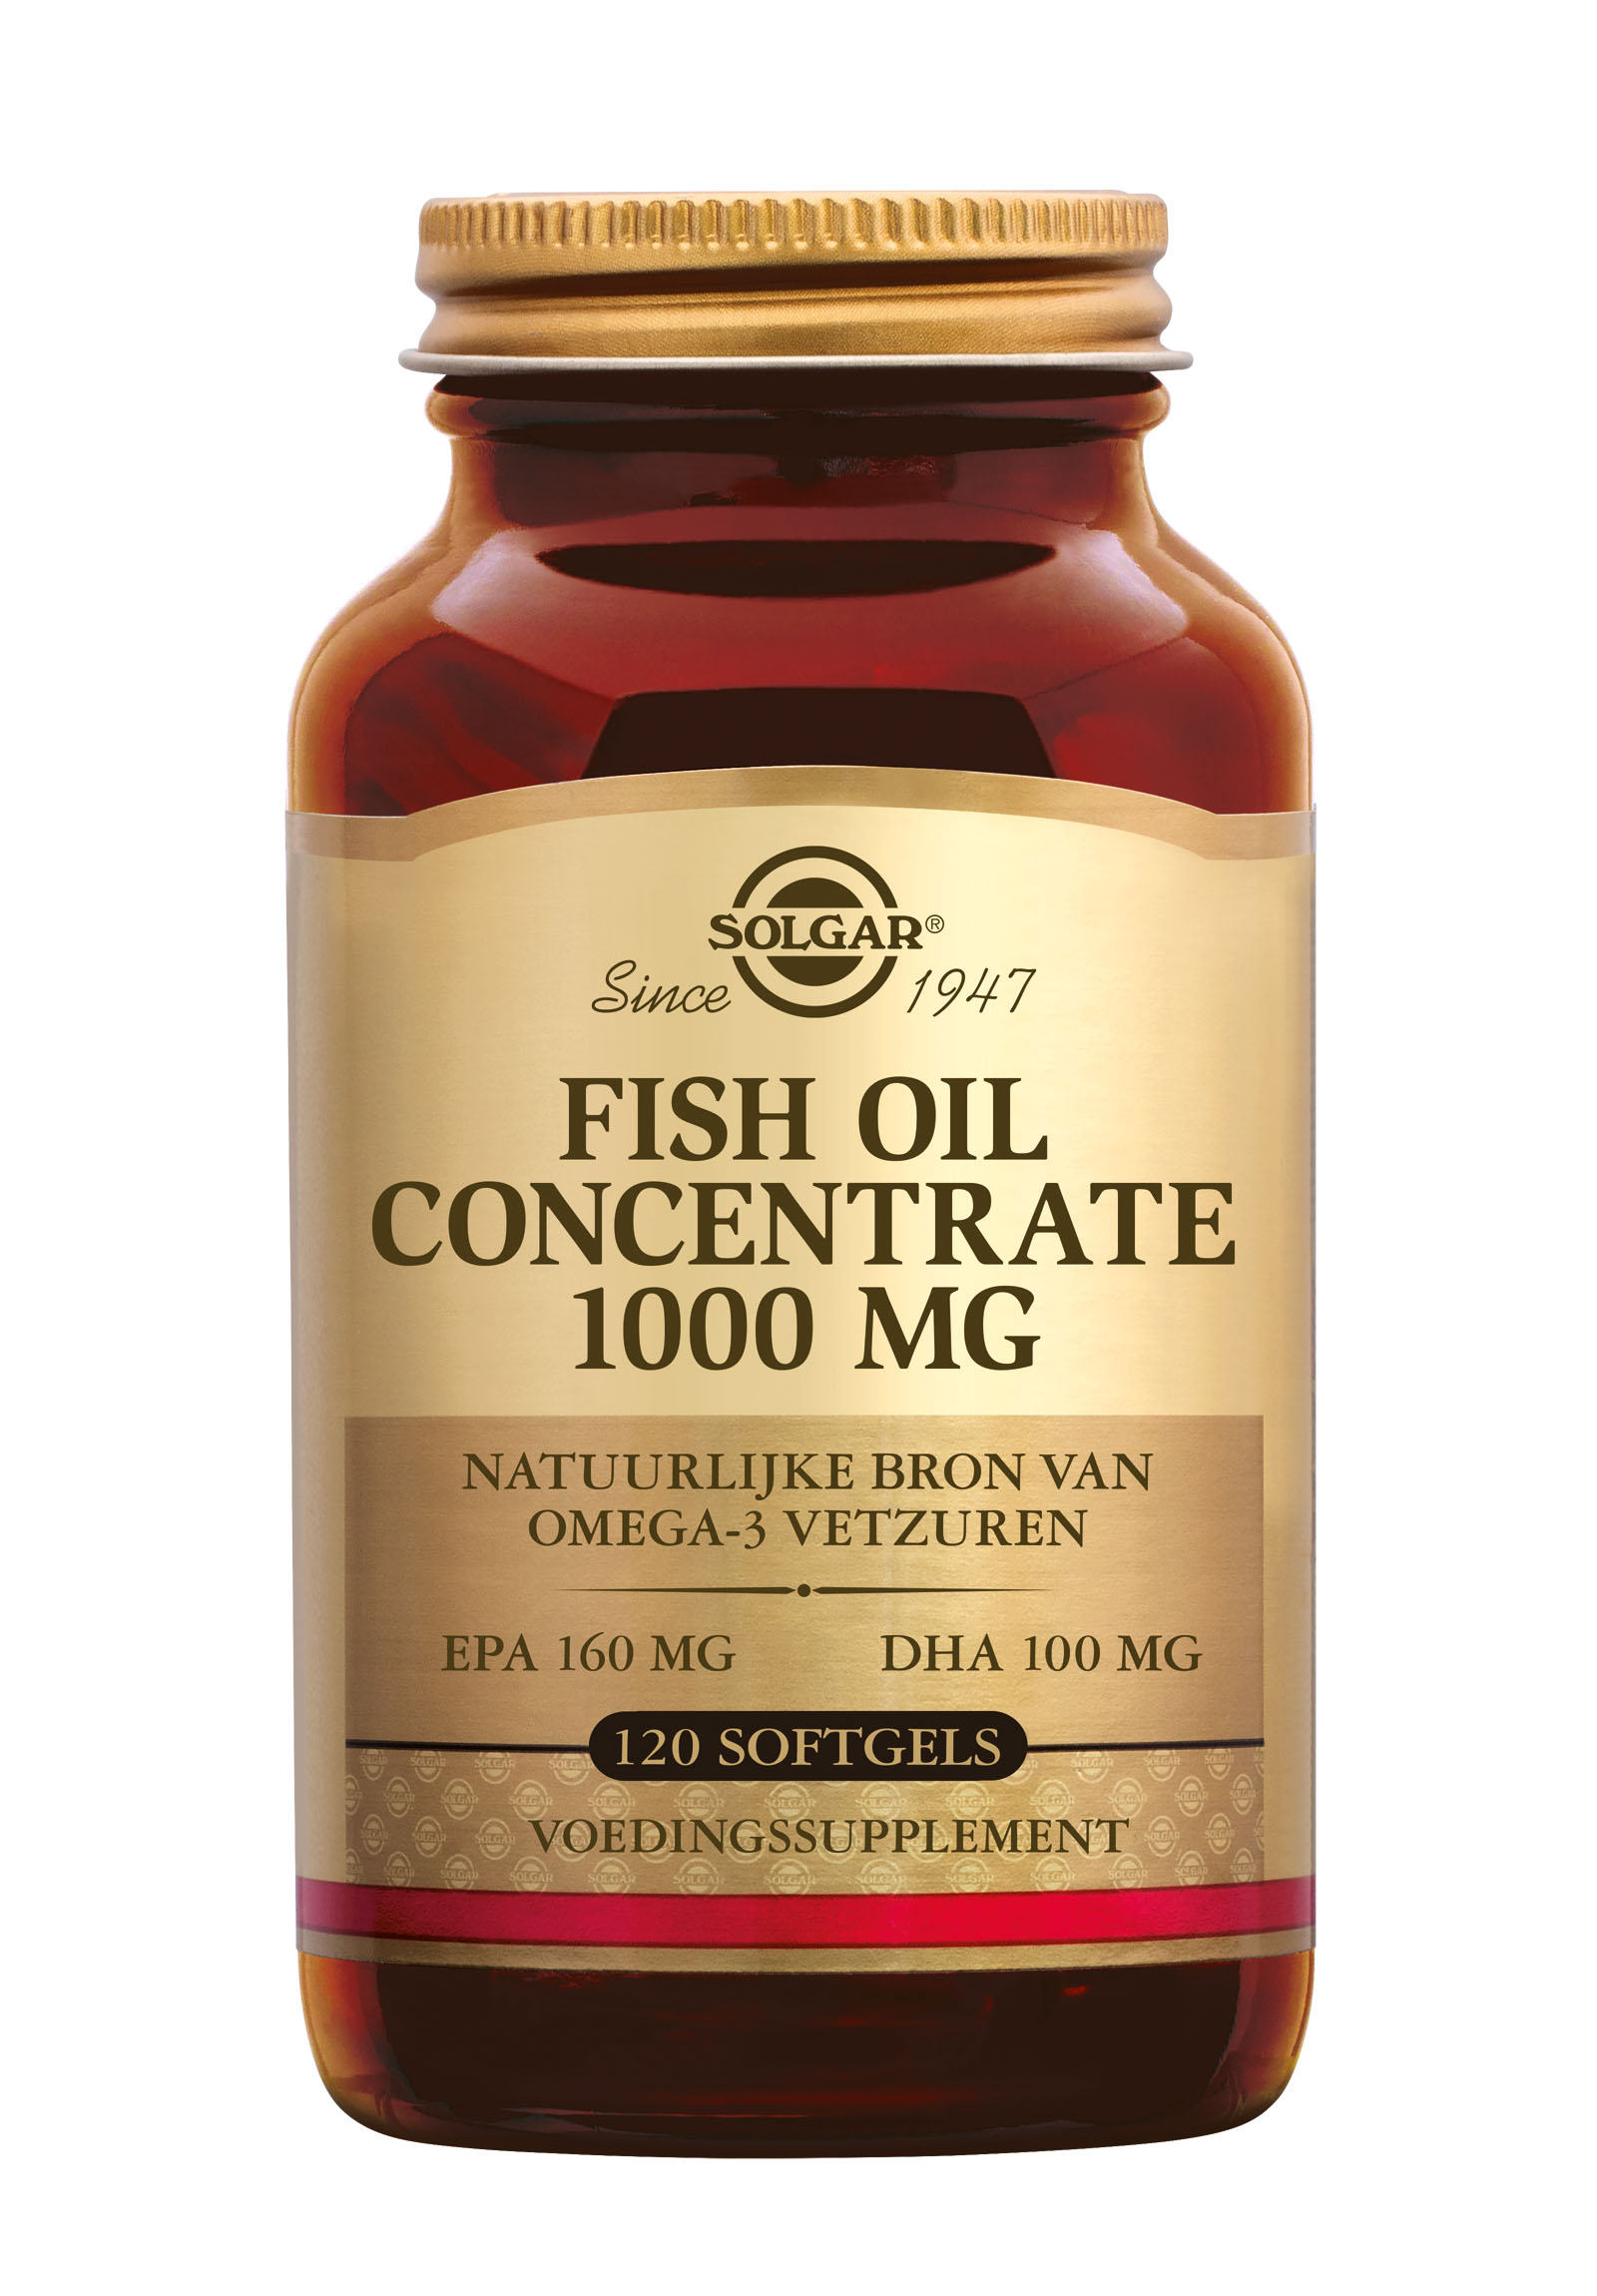 Solgar Fish Oil Concentrate 1000 mg (120 stuks)